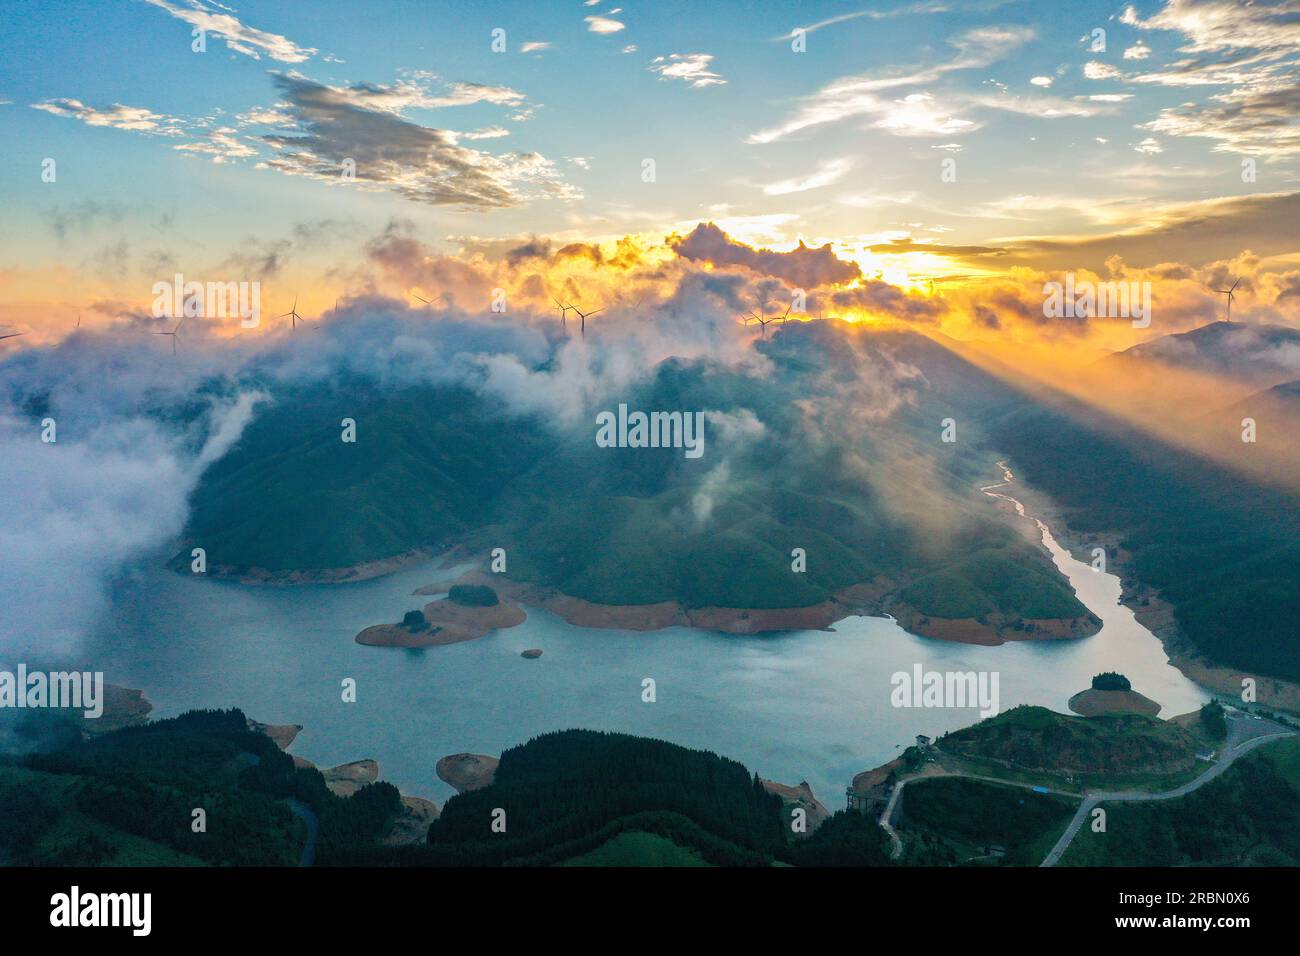 GUILIN, CHINE - 10 JUILLET 2023 - une photo aérienne montre le paysage du parc national des zones humides de Tianhu à Guilin, dans la région autonome du Guangxi Zhuang de Chine méridionale Banque D'Images